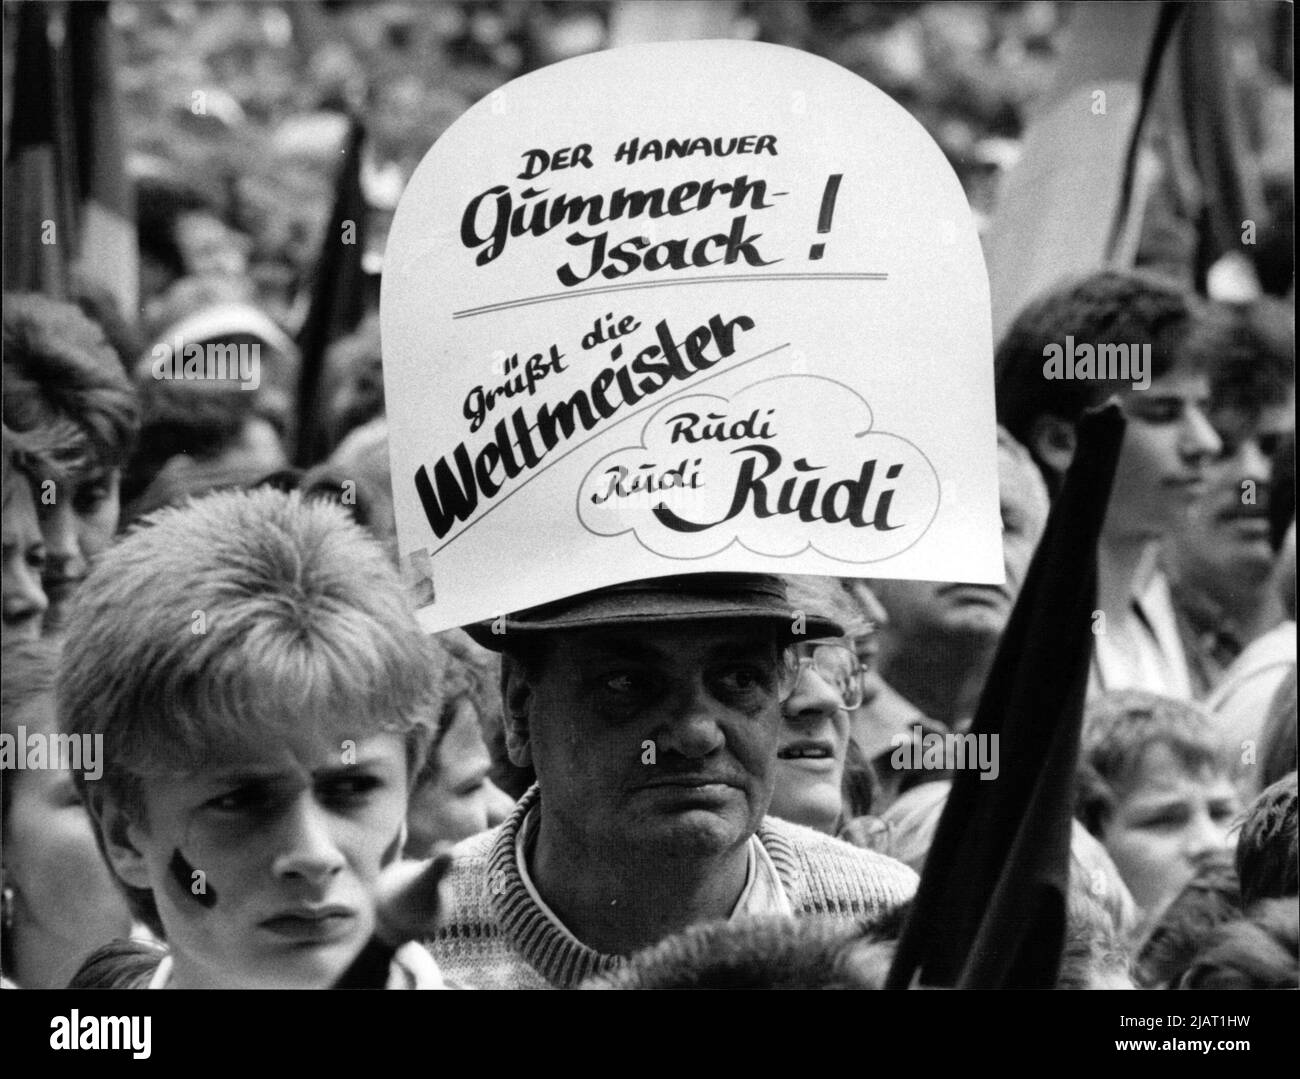 Das Foto zeigt einen Fan der deutschen Nationalmannschaft mit extra Empfang für Rudi Völler. Auf dem Platz haben sich etwa 100.000 Fans nach dem Sieg der Fußballweltmeisterschaft 1990 in Italien versammelt, um ihre Mannschaft zu feiern. Stock Photo